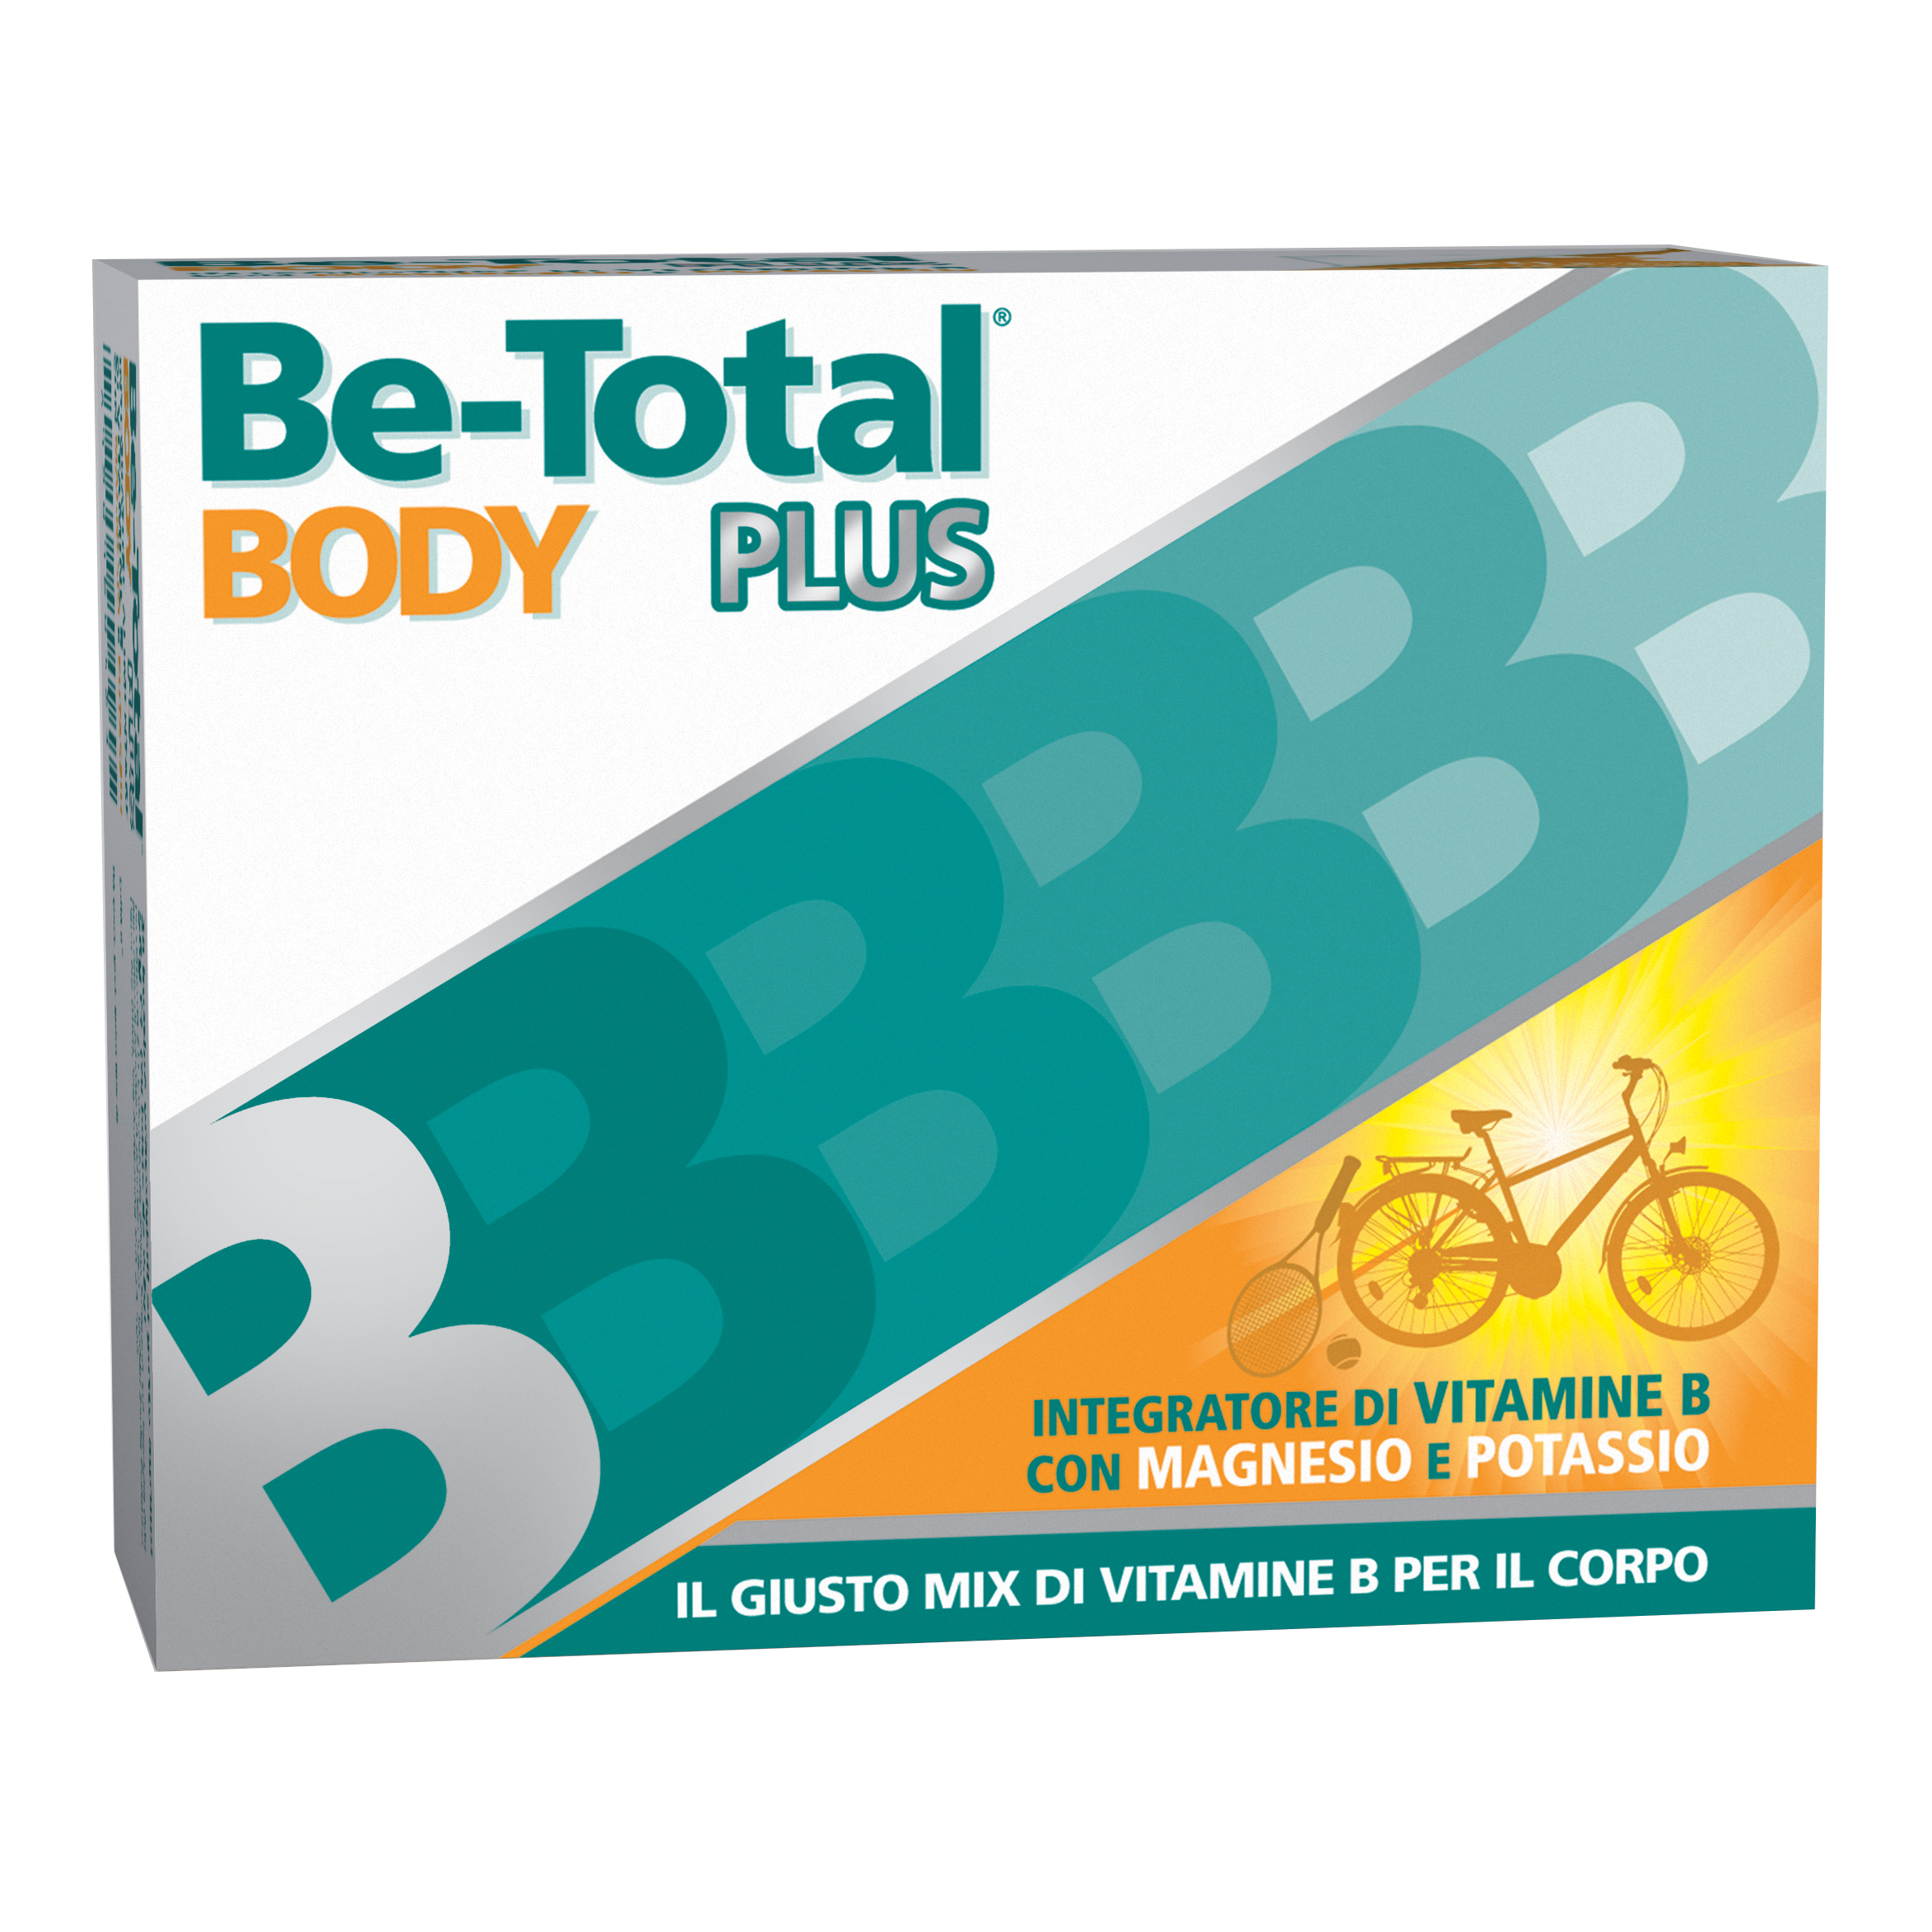 Be-Total Body Plus - Integratore Vitamina B con Magnesio e Potassio - 20 Bustine